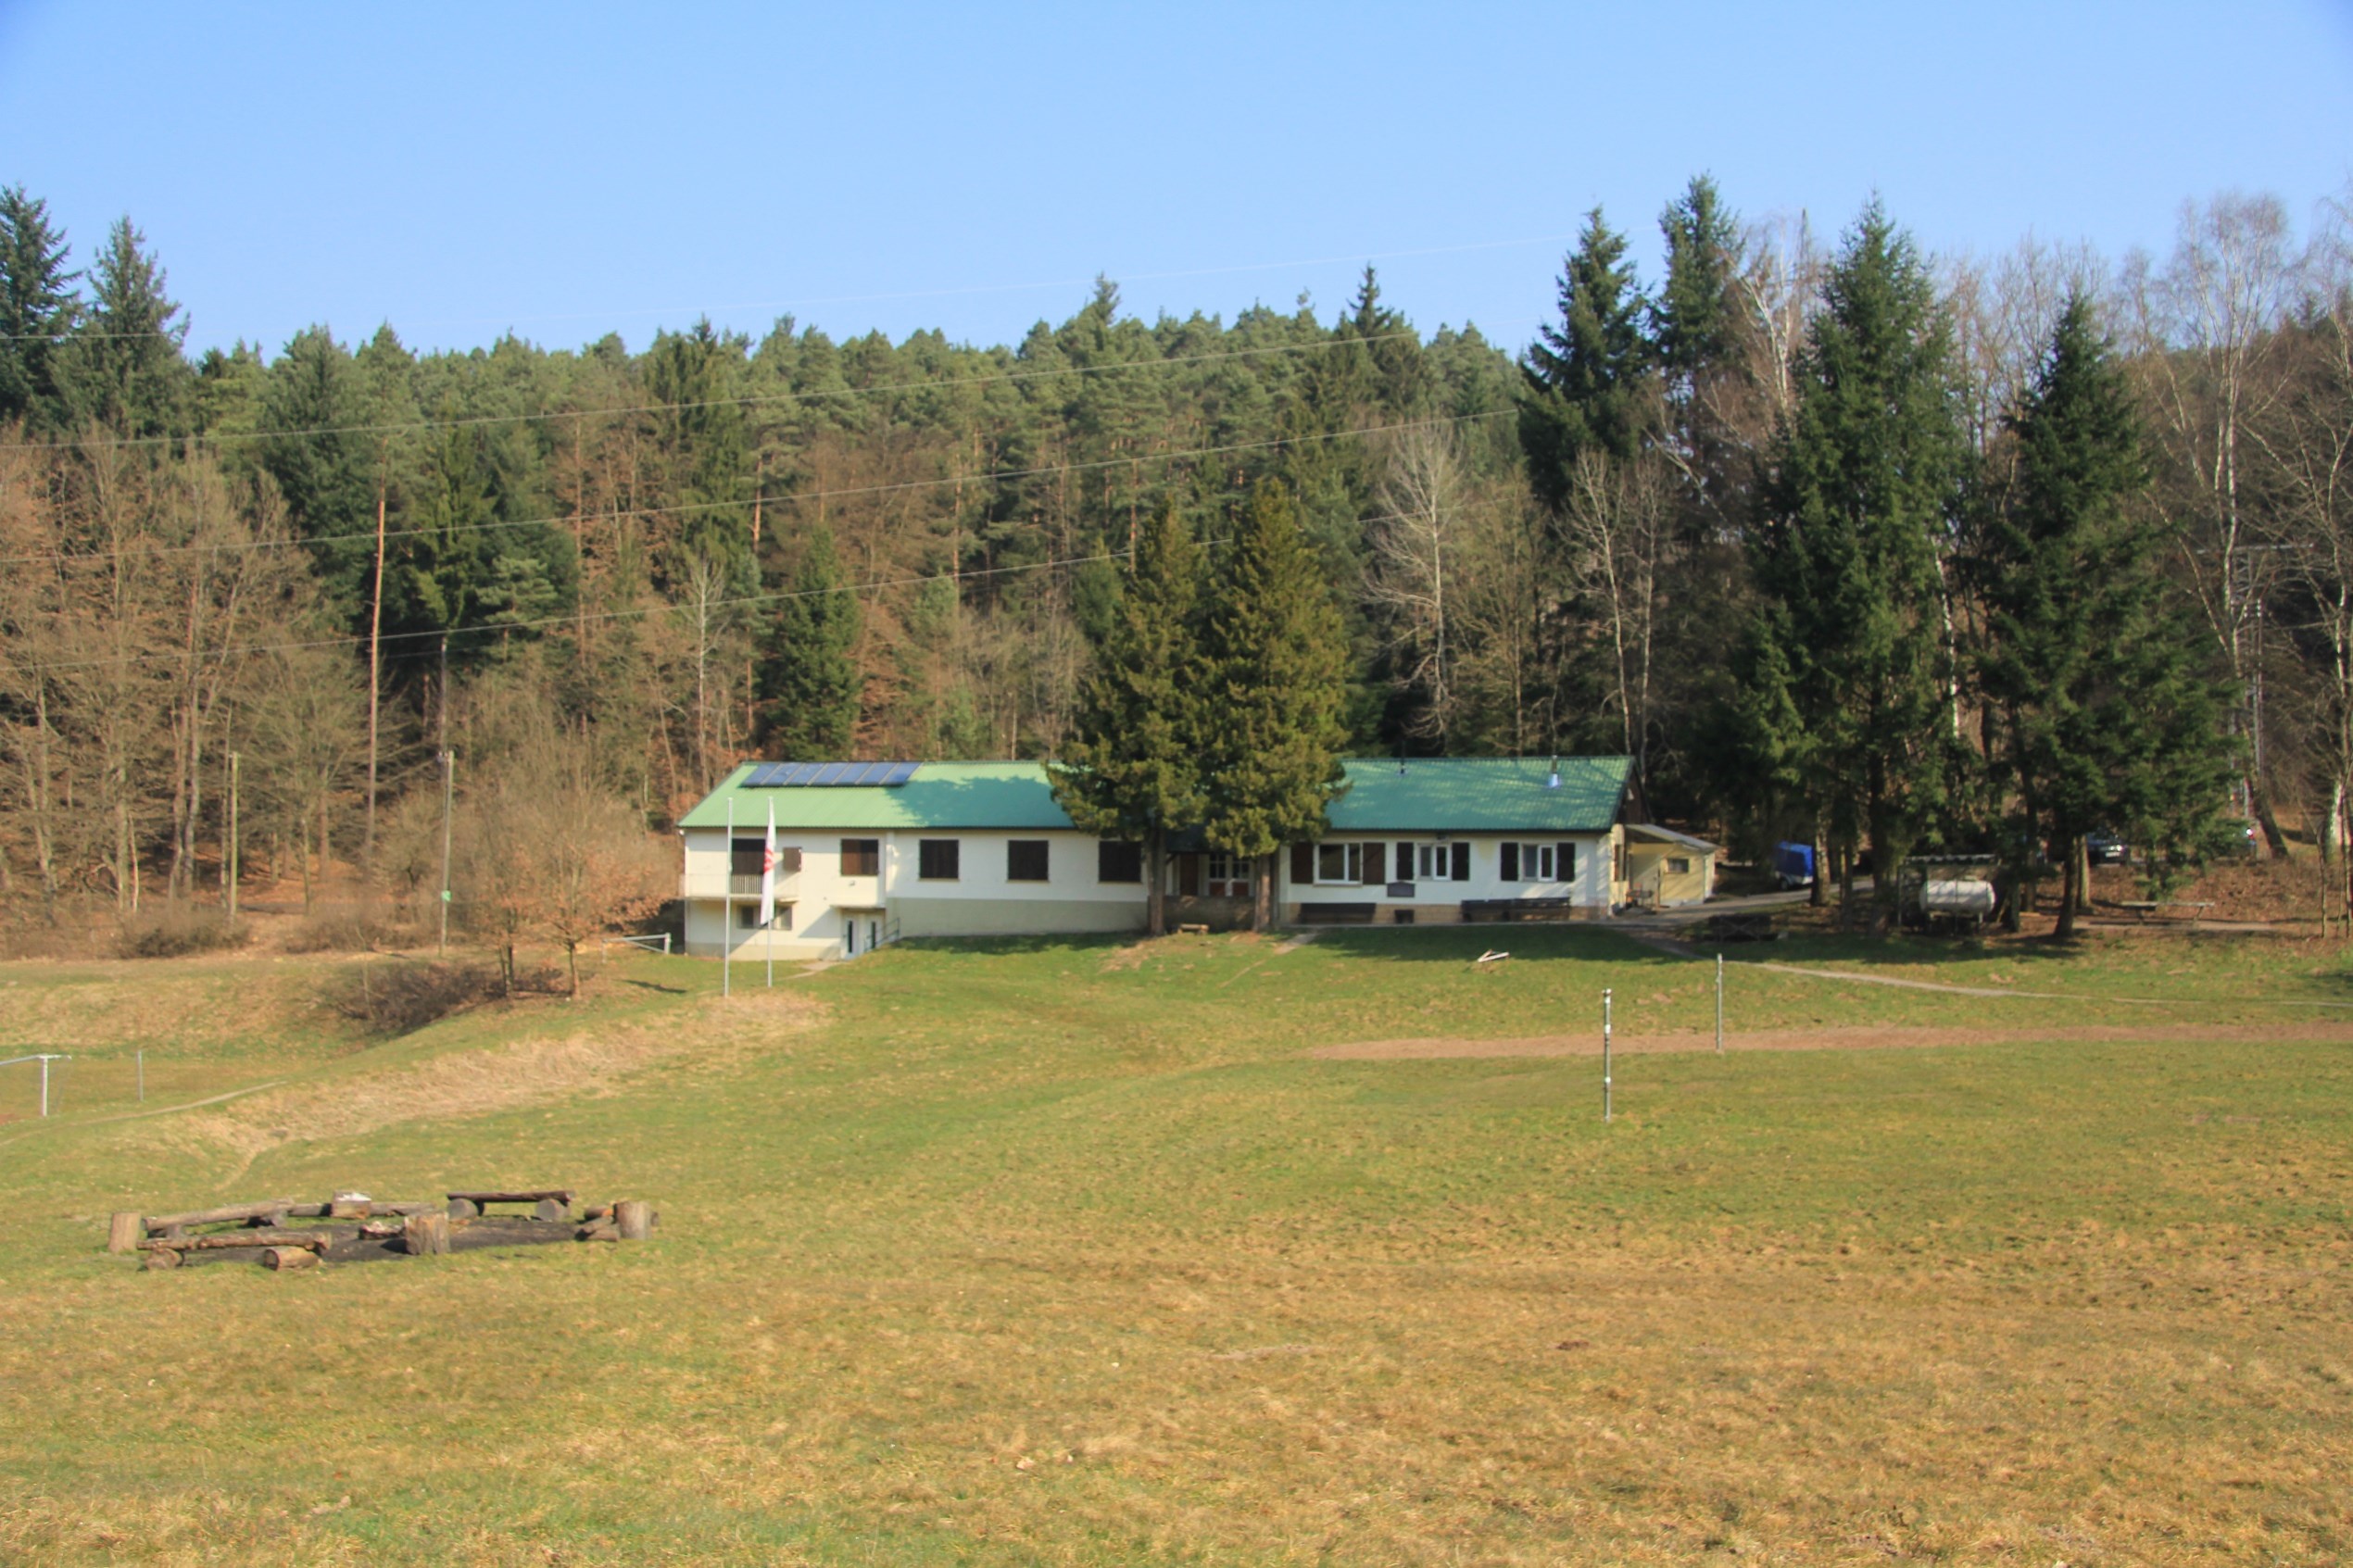 cvjm-gastfreunde-cvjm-camp-michelstadt-bild-1.jpg